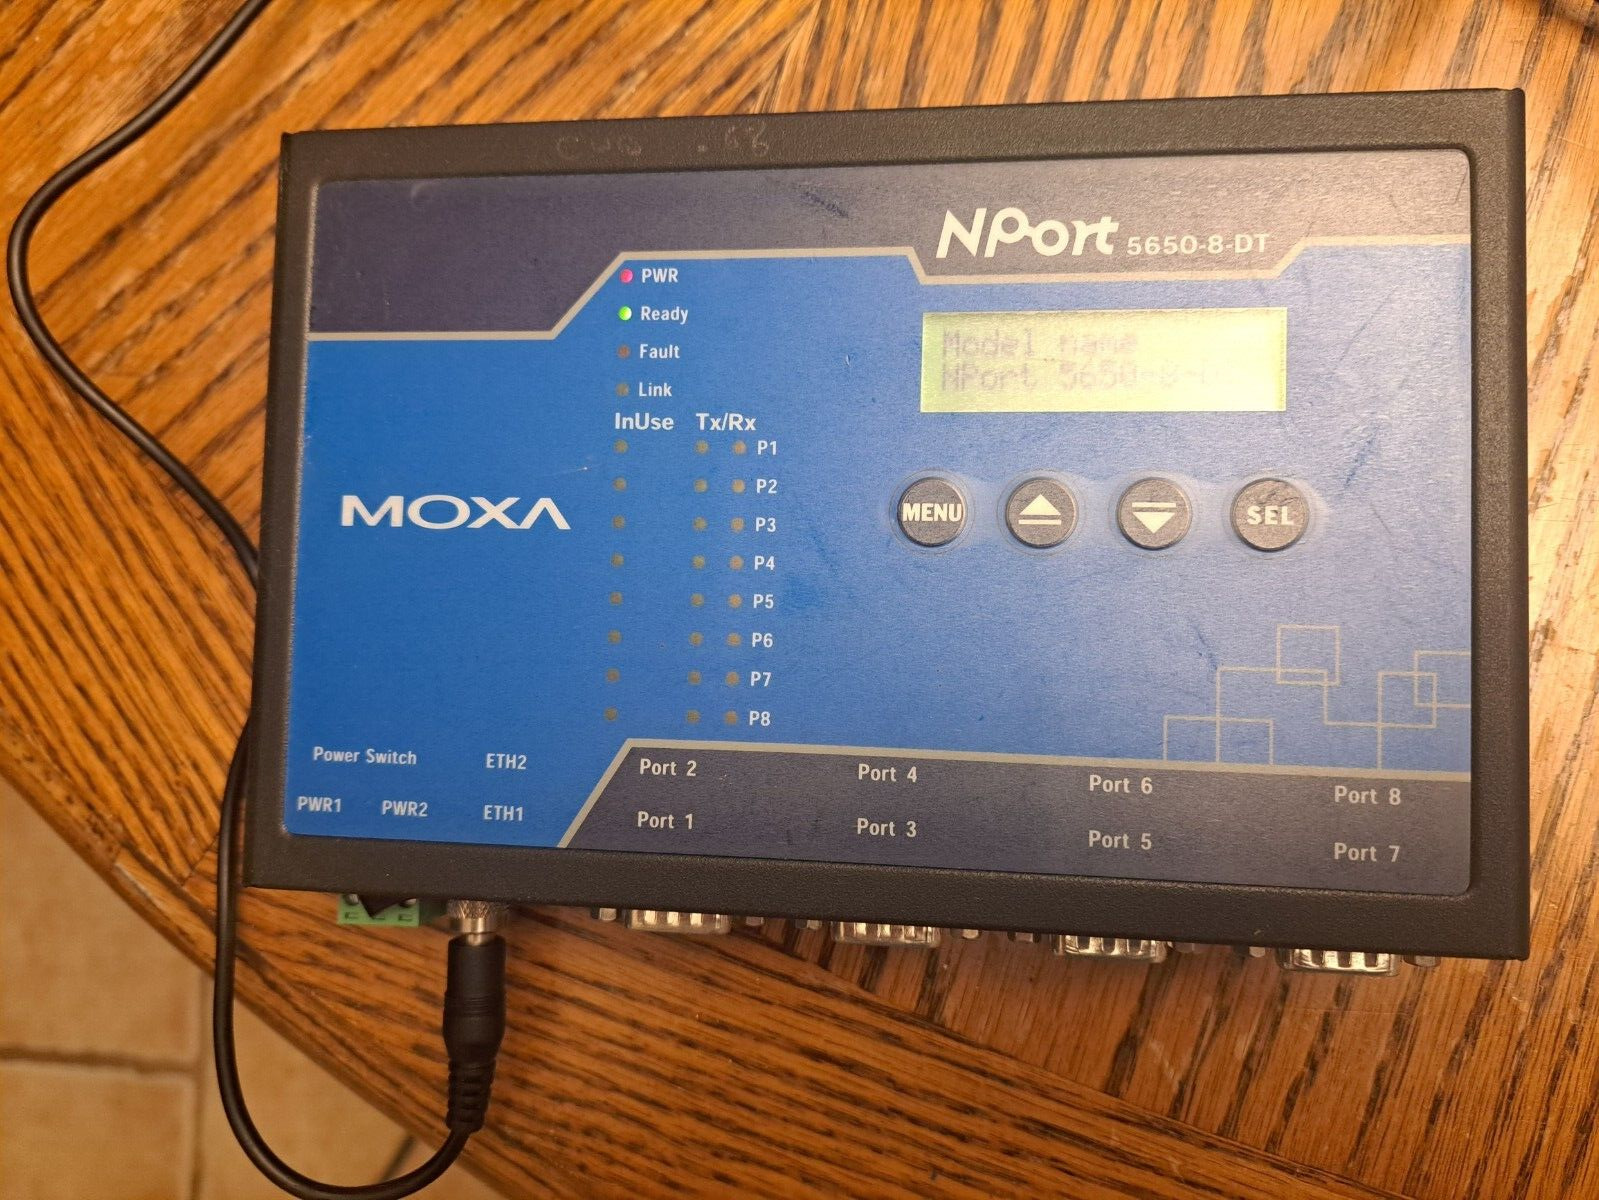 Moxa 5650-8-DT NPort 8-Port Device Server